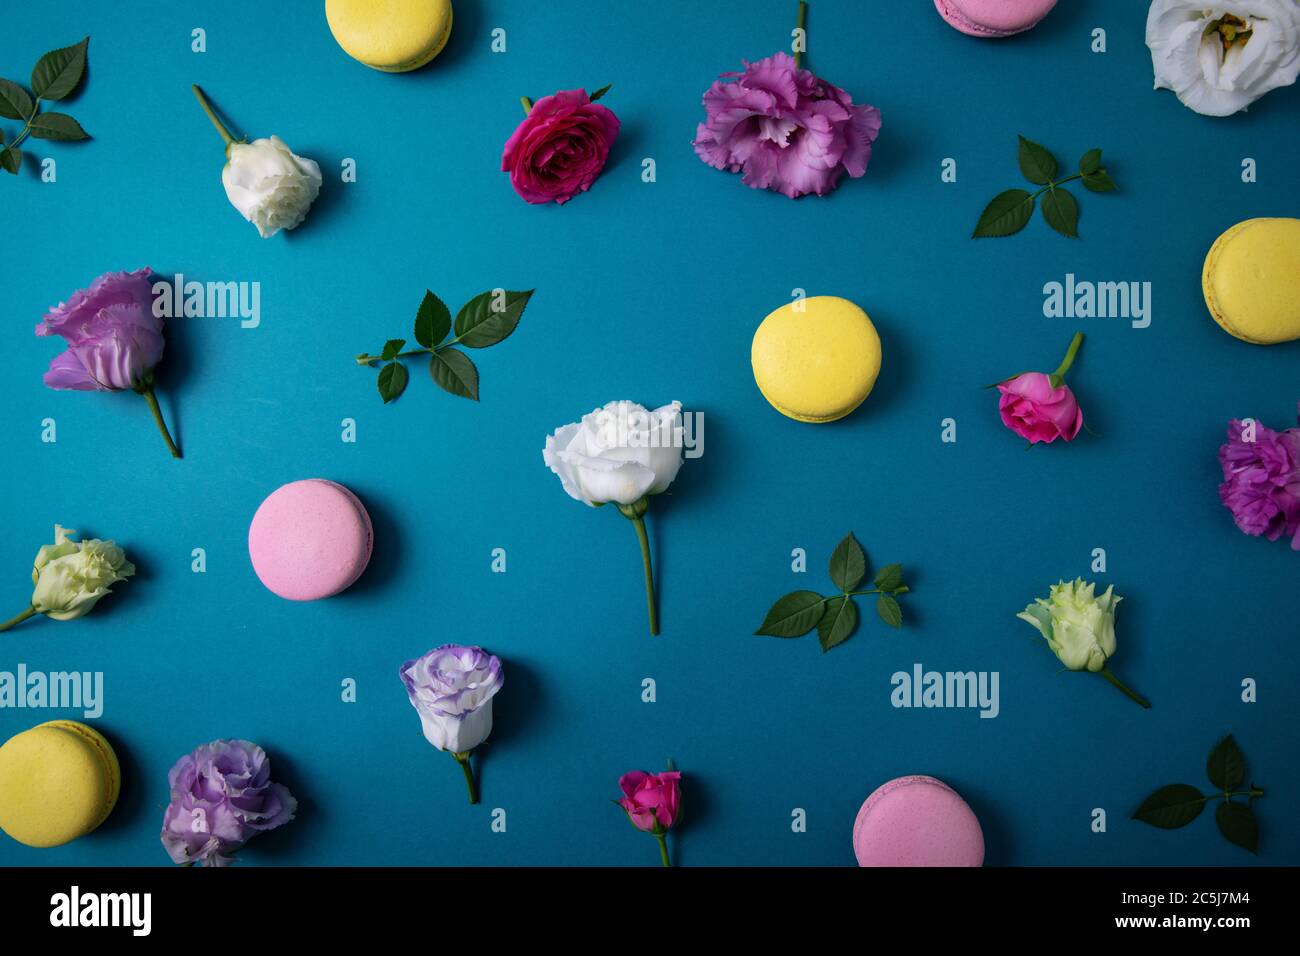 fiori colorati e macaron su sfondo blu. vista dall'alto Foto Stock